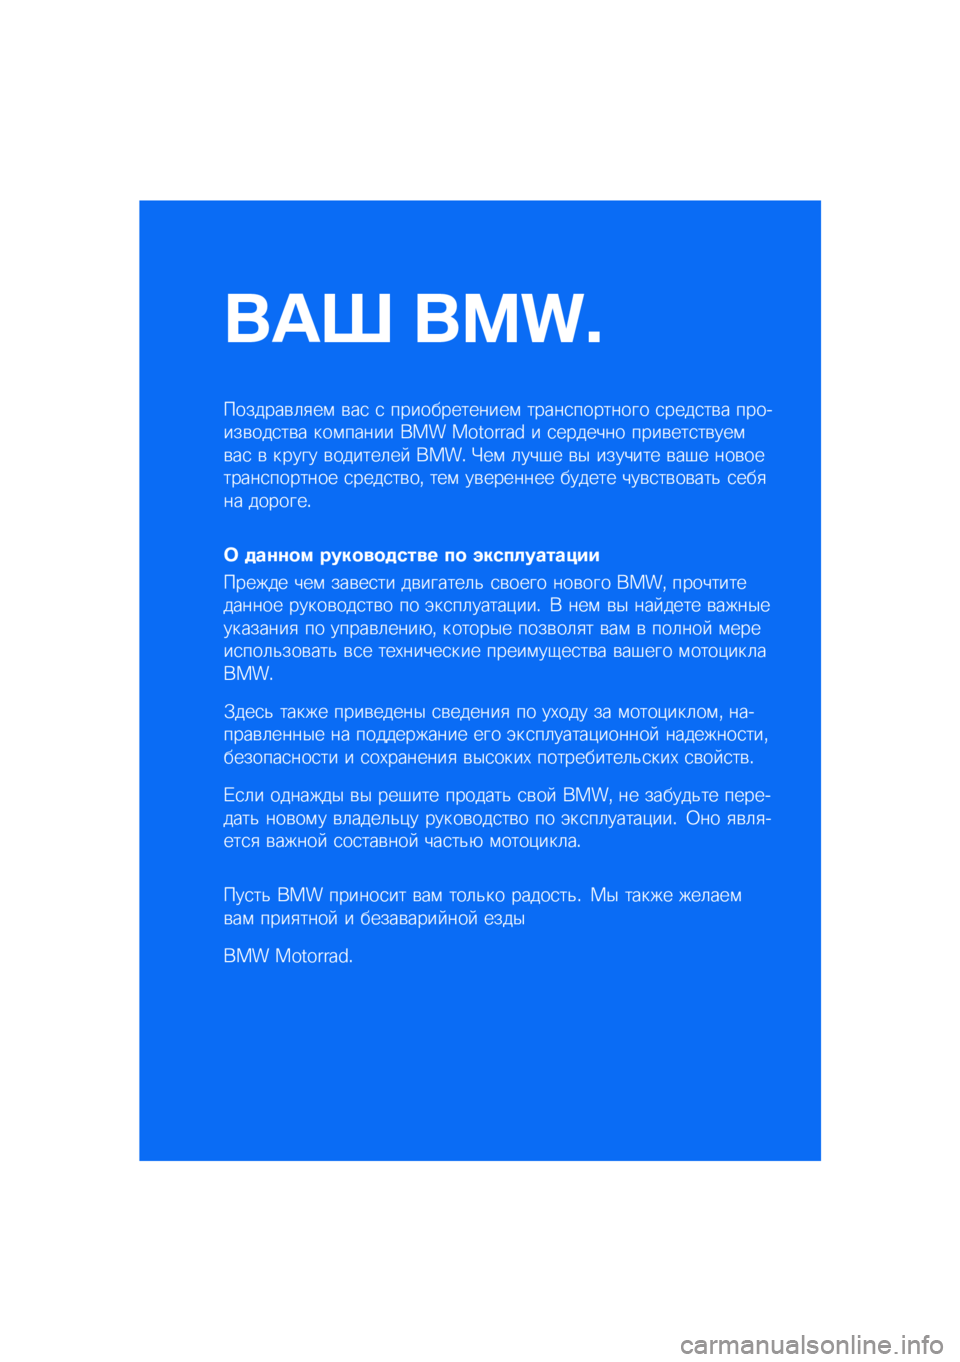 BMW MOTORRAD F 850 GS 2021  Руководство по эксплуатации (in Russian) ��� ����\b
�������\b�	�
��\f �\b��
 �
 �������������\f �����
�������� �
����
��\b� �������\b���
��\b� ���\f����� ��� �������� � 